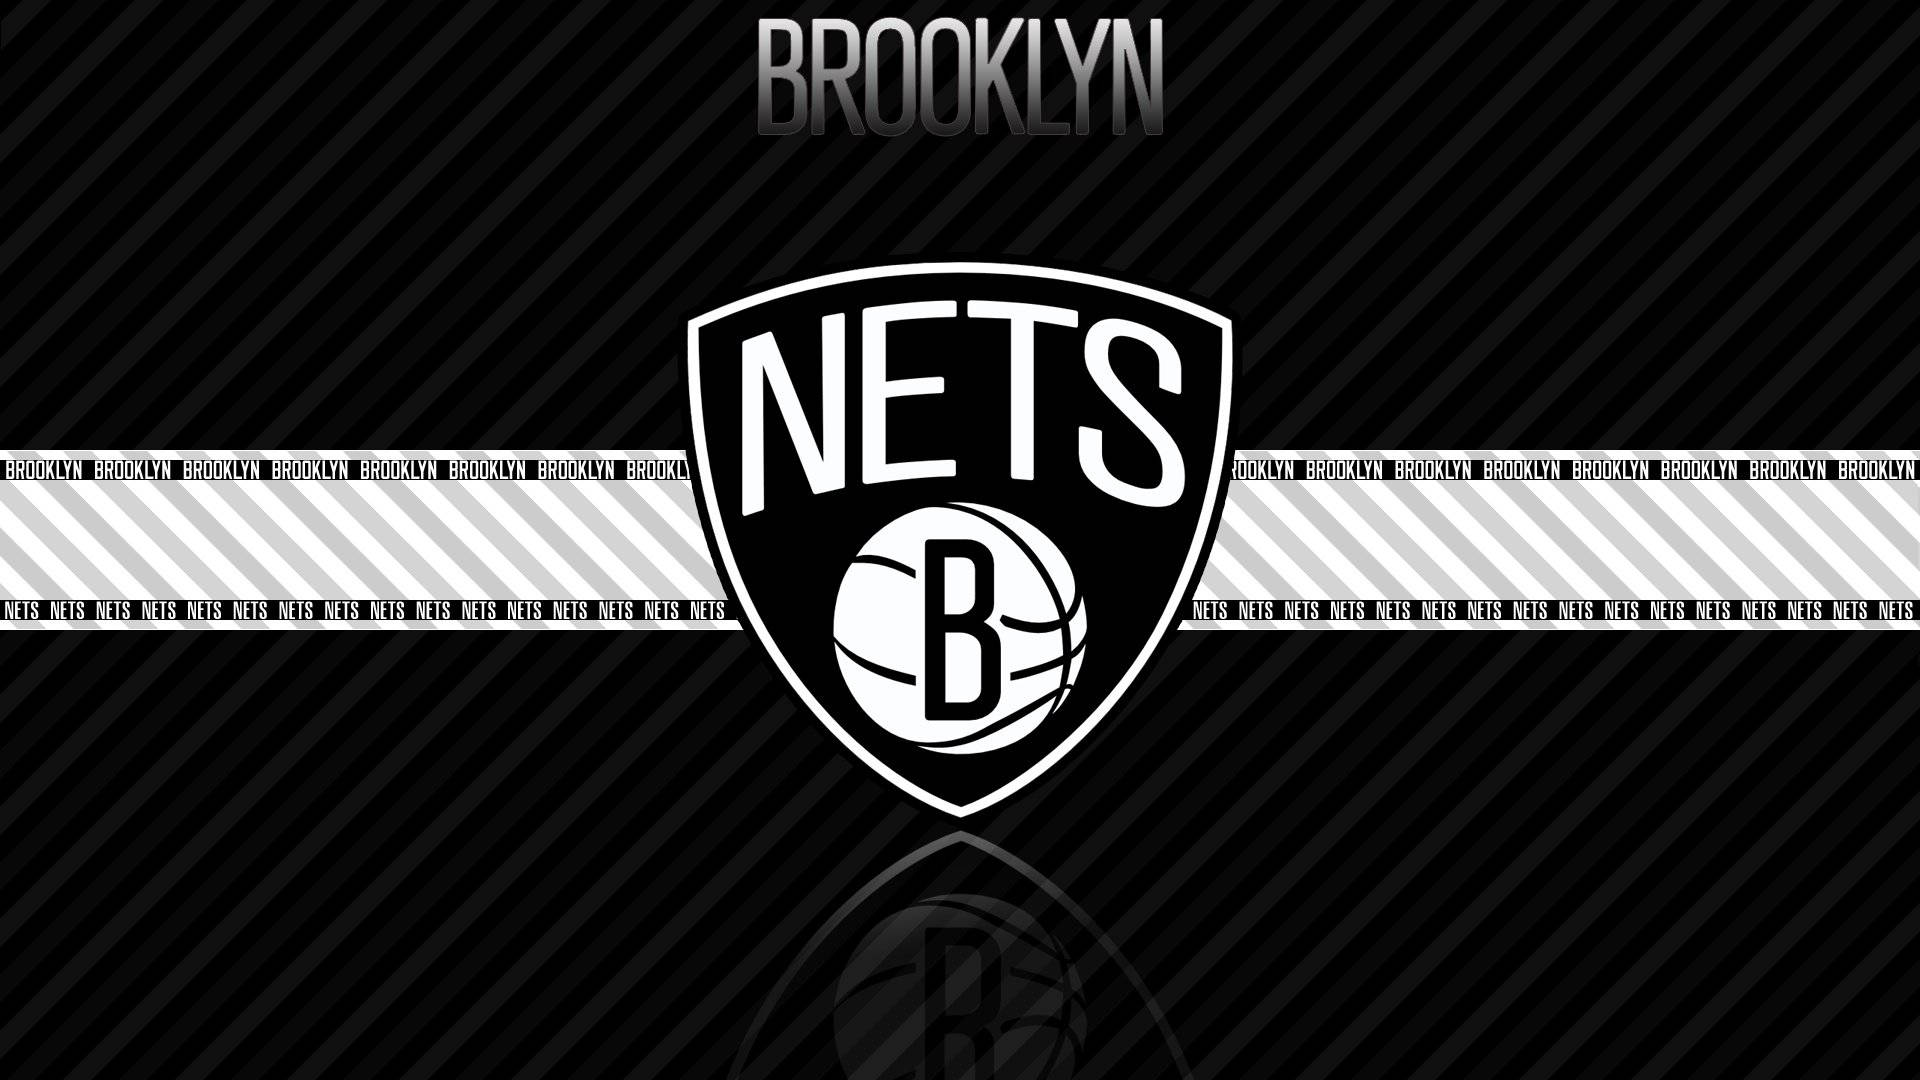 Spiegelverkehrtesbrooklyn Nets-logo Wallpaper